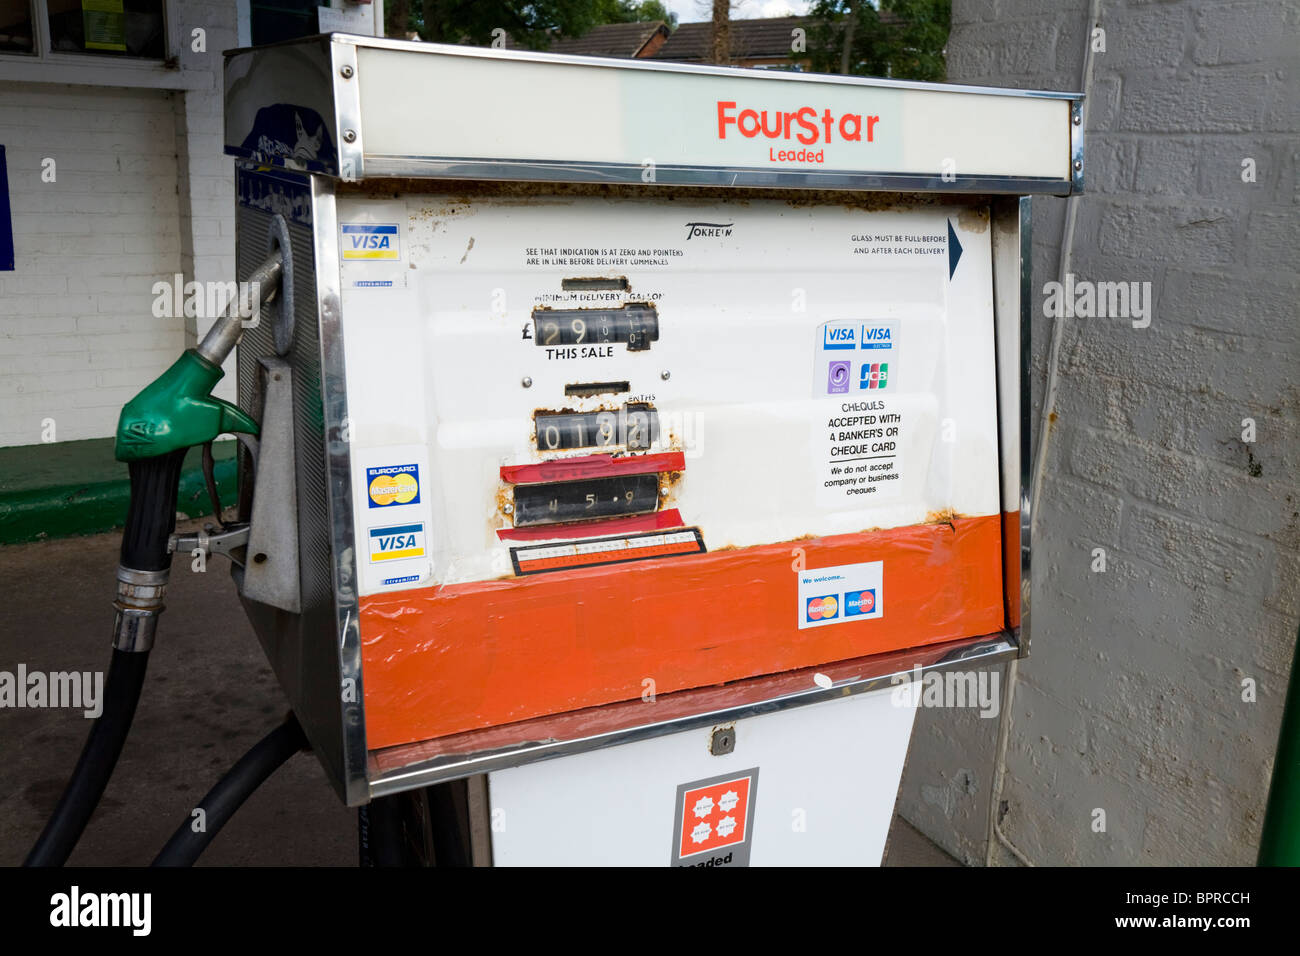 Un vecchio obsoleto il vecchio quattro stelle / pompa vintage a 4 stelle le pompe di benzina in corrispondenza della stazione di riempimento garage piazzale. Regno Unito. Foto Stock